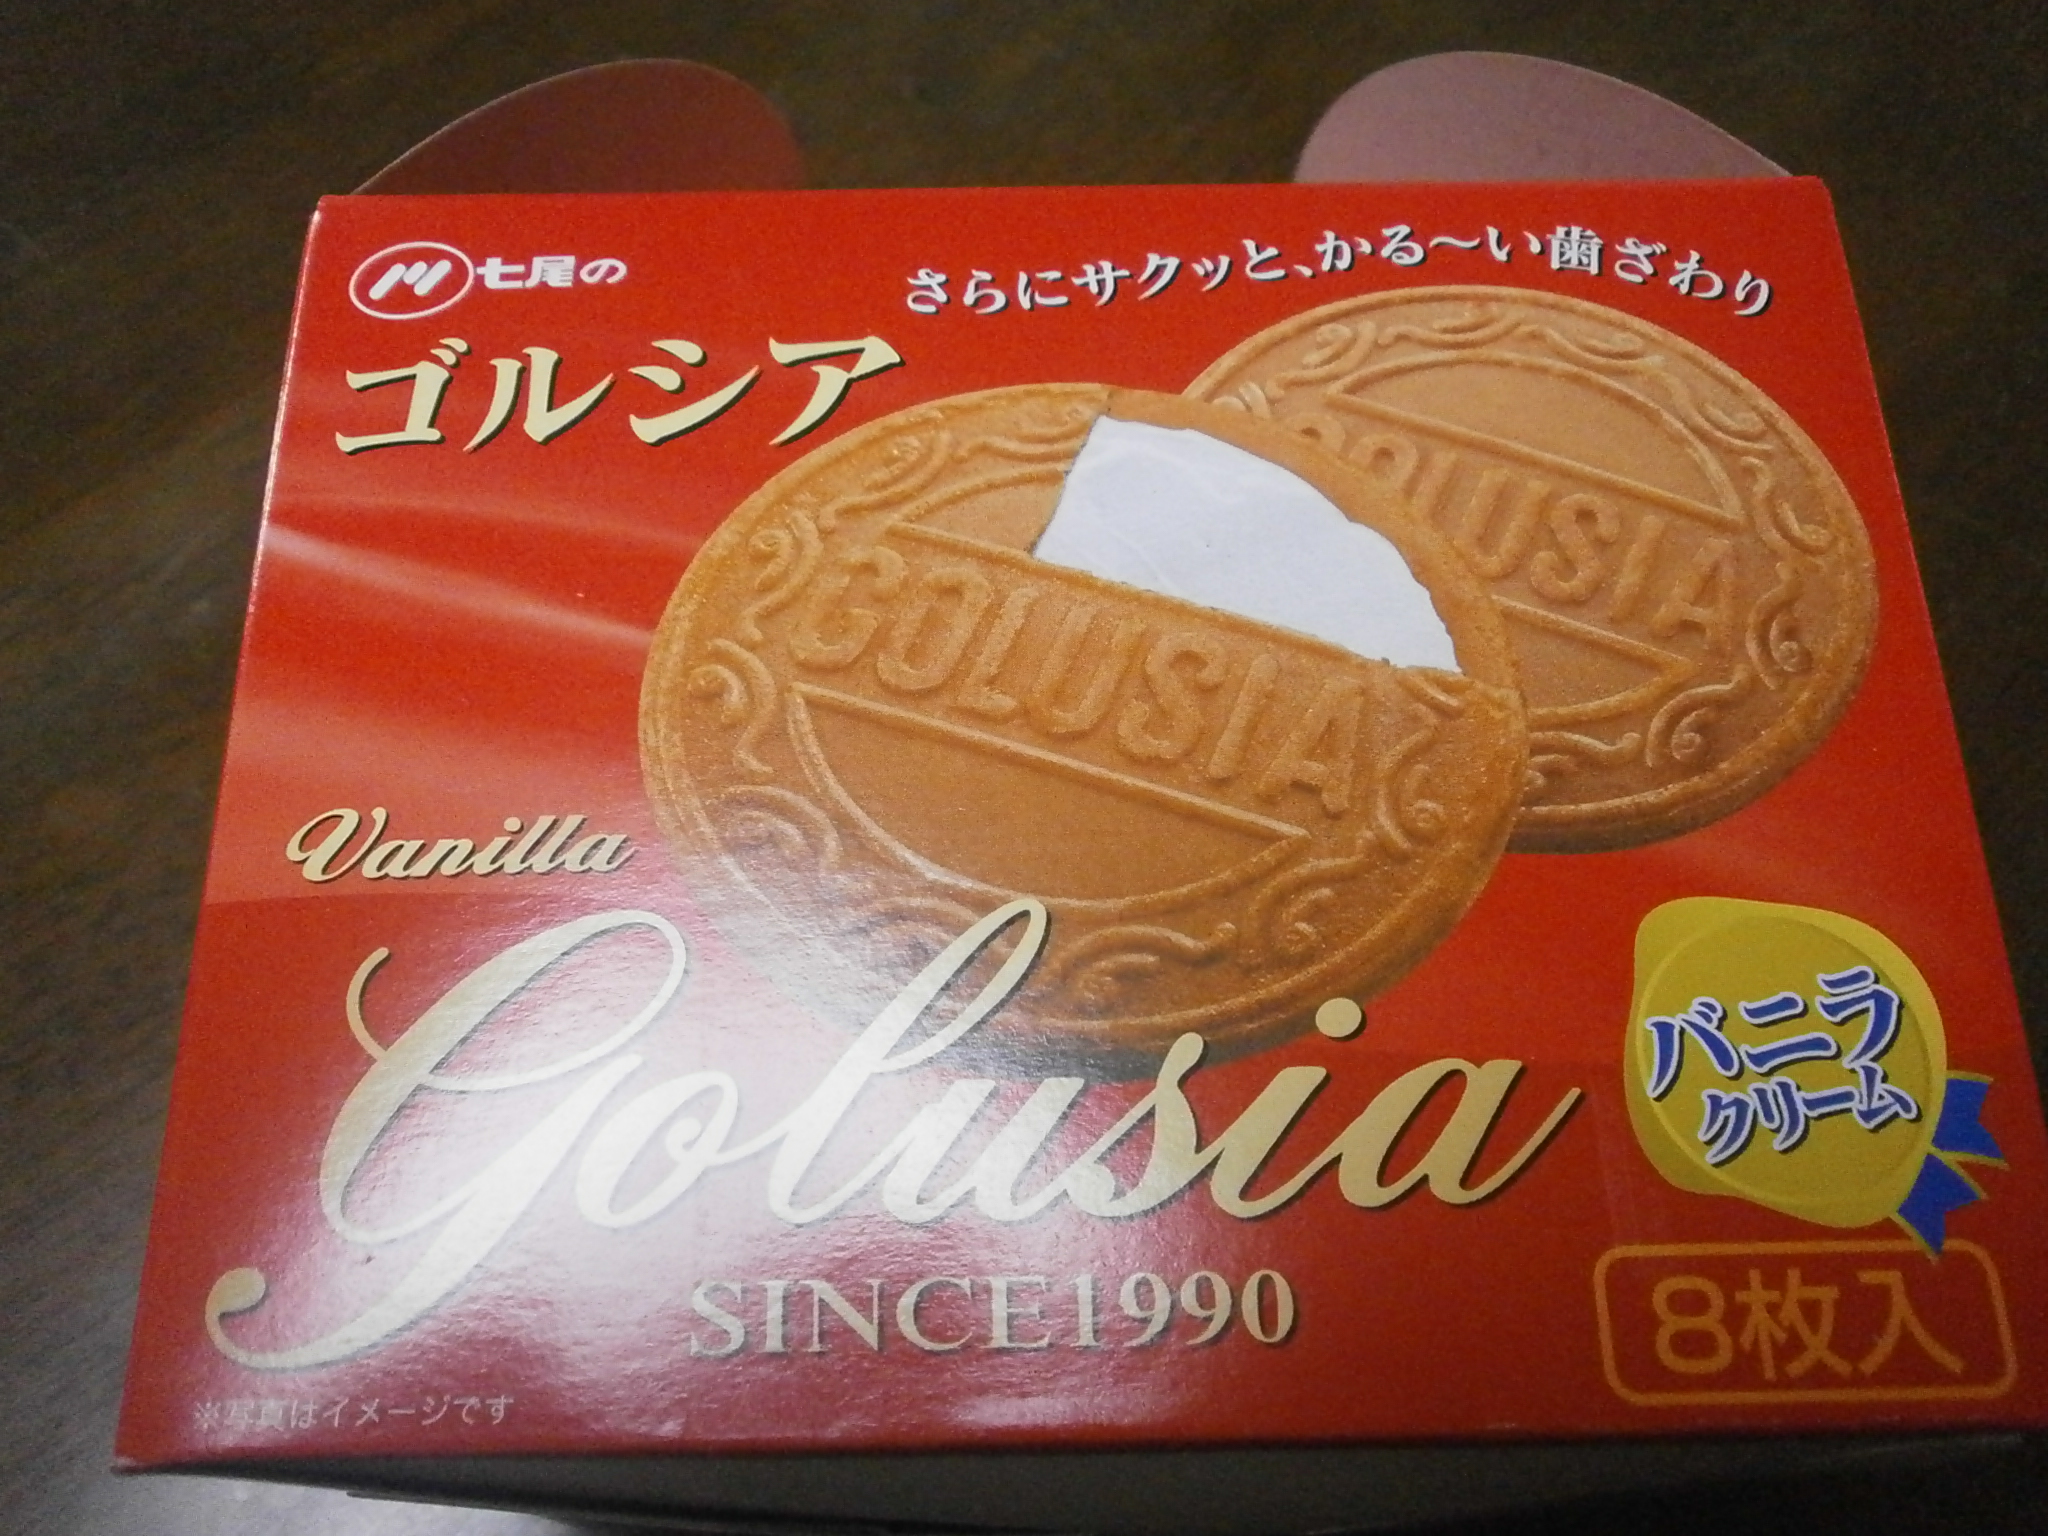 Gorushia (crema de vainilla)